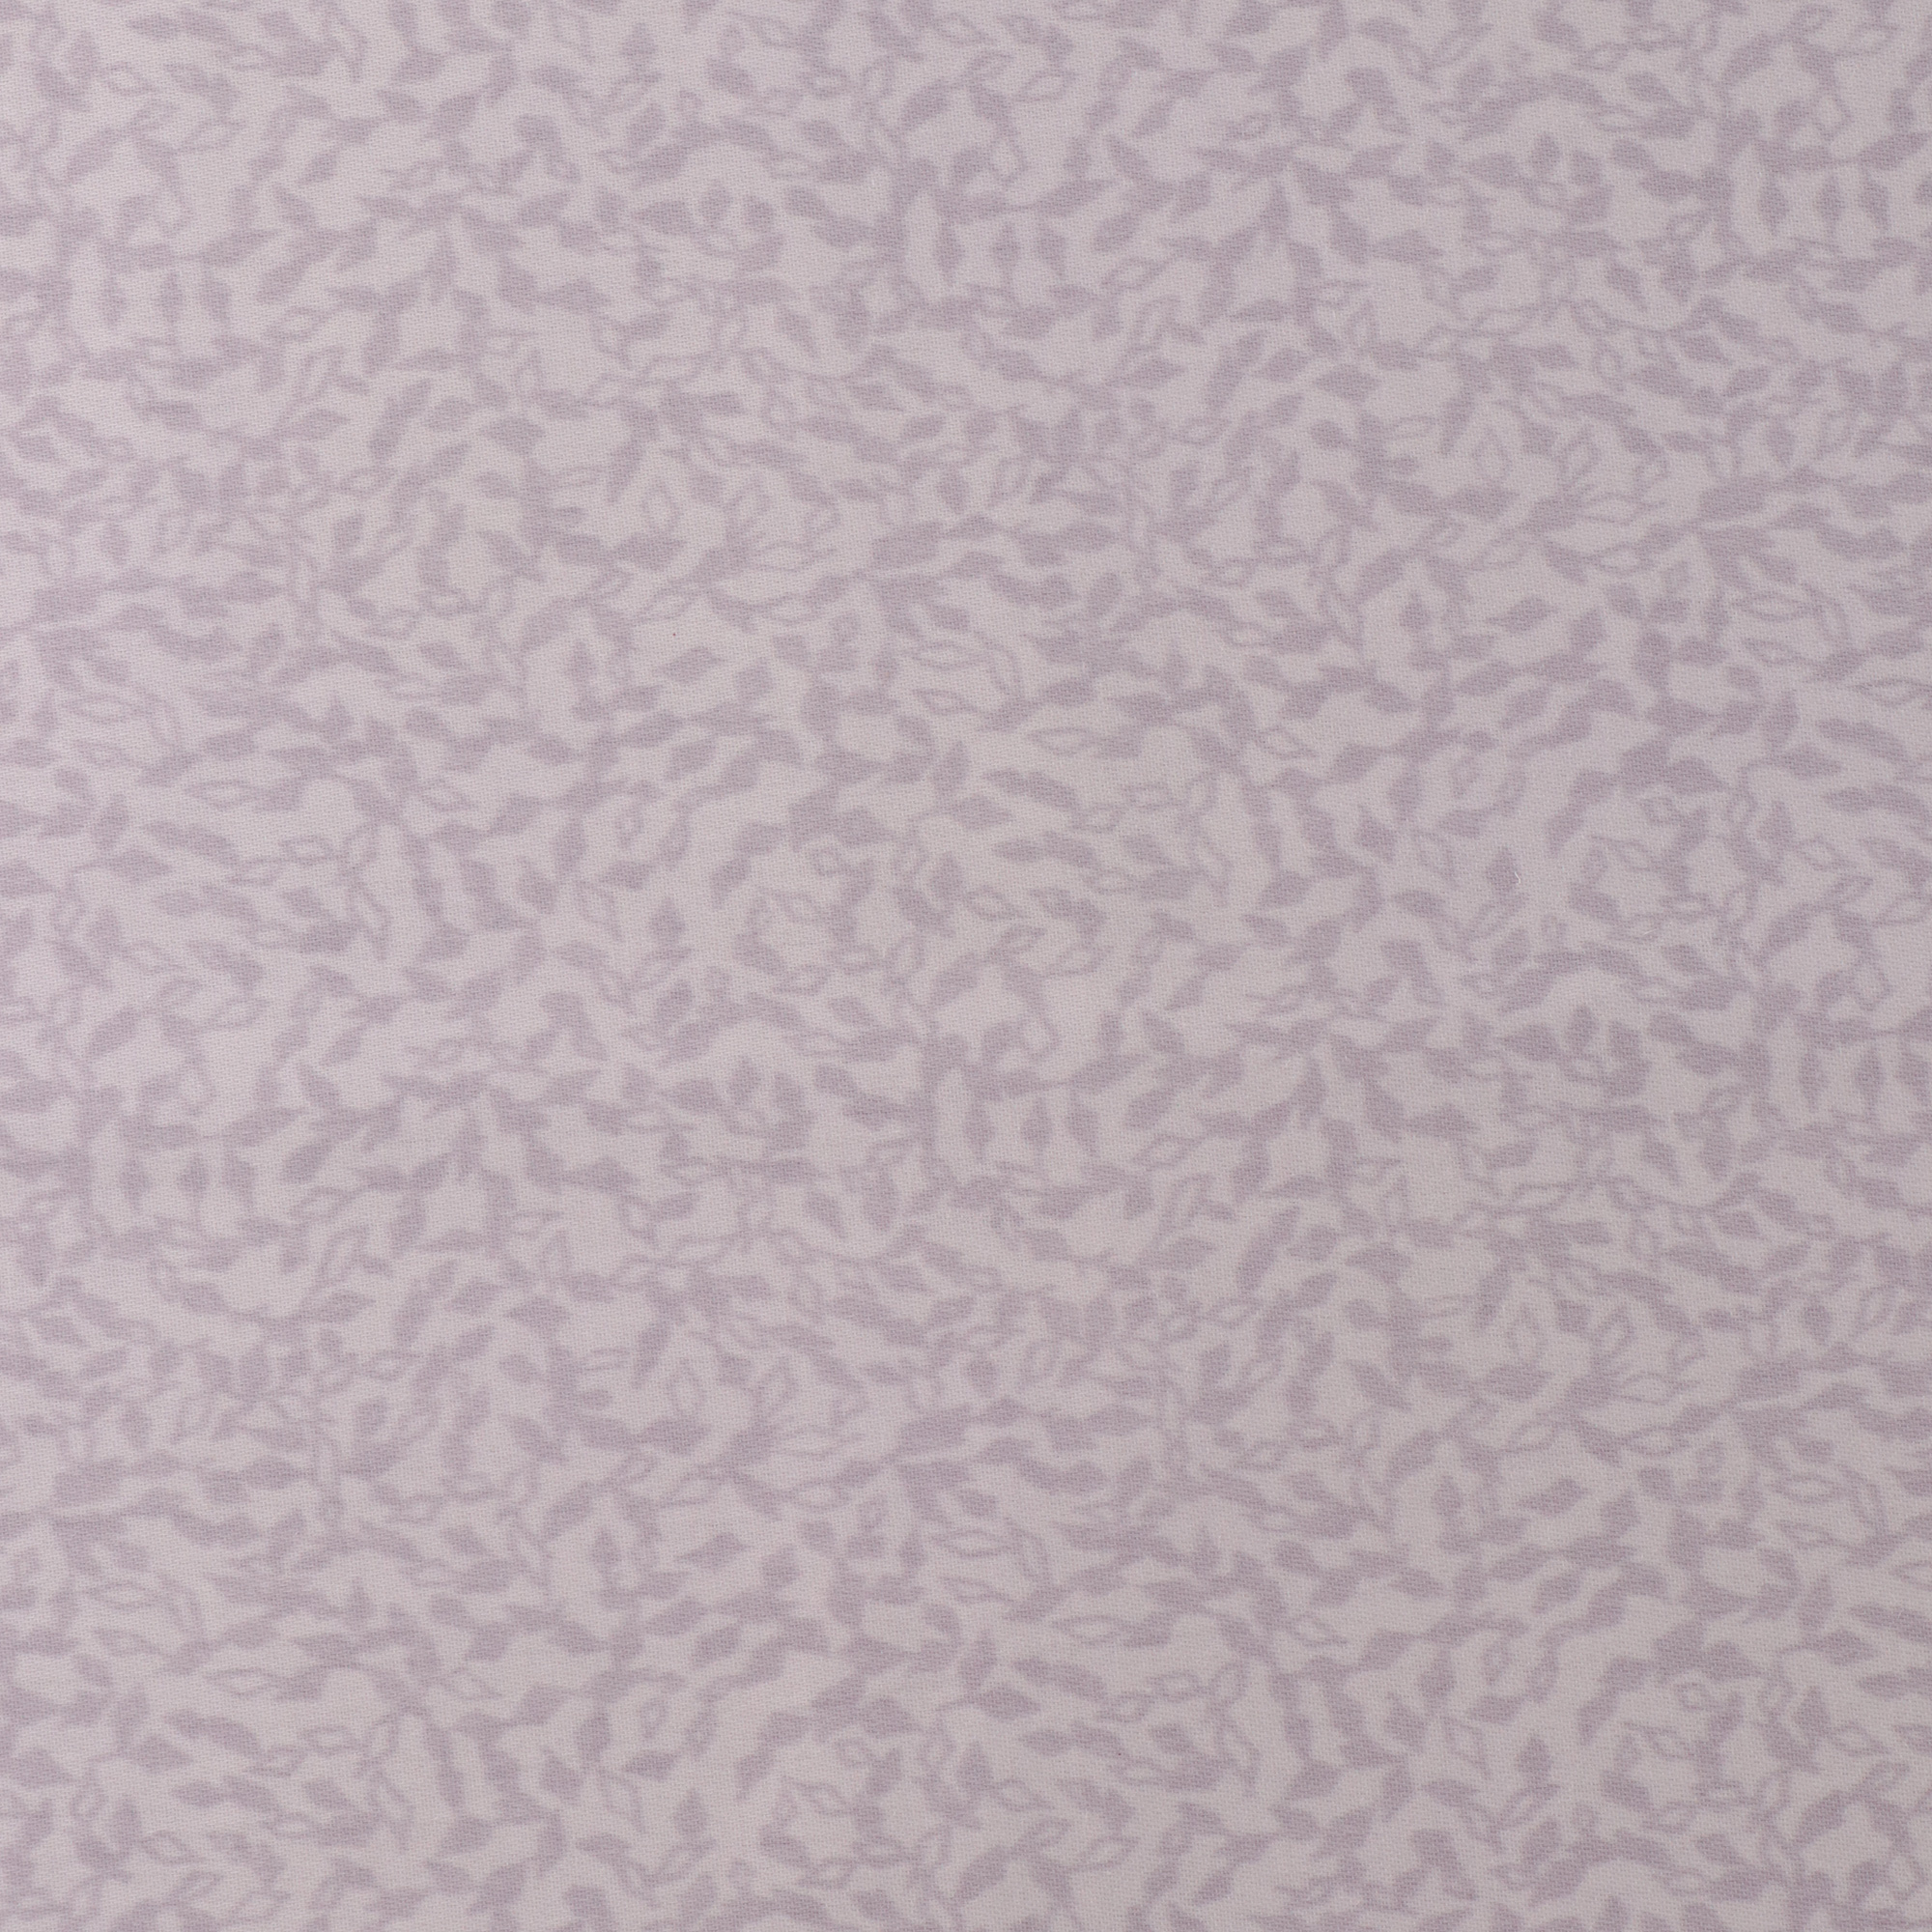 Постельный комплект Classic by togas Руан двуспальный, размер двуспальный - фото 5